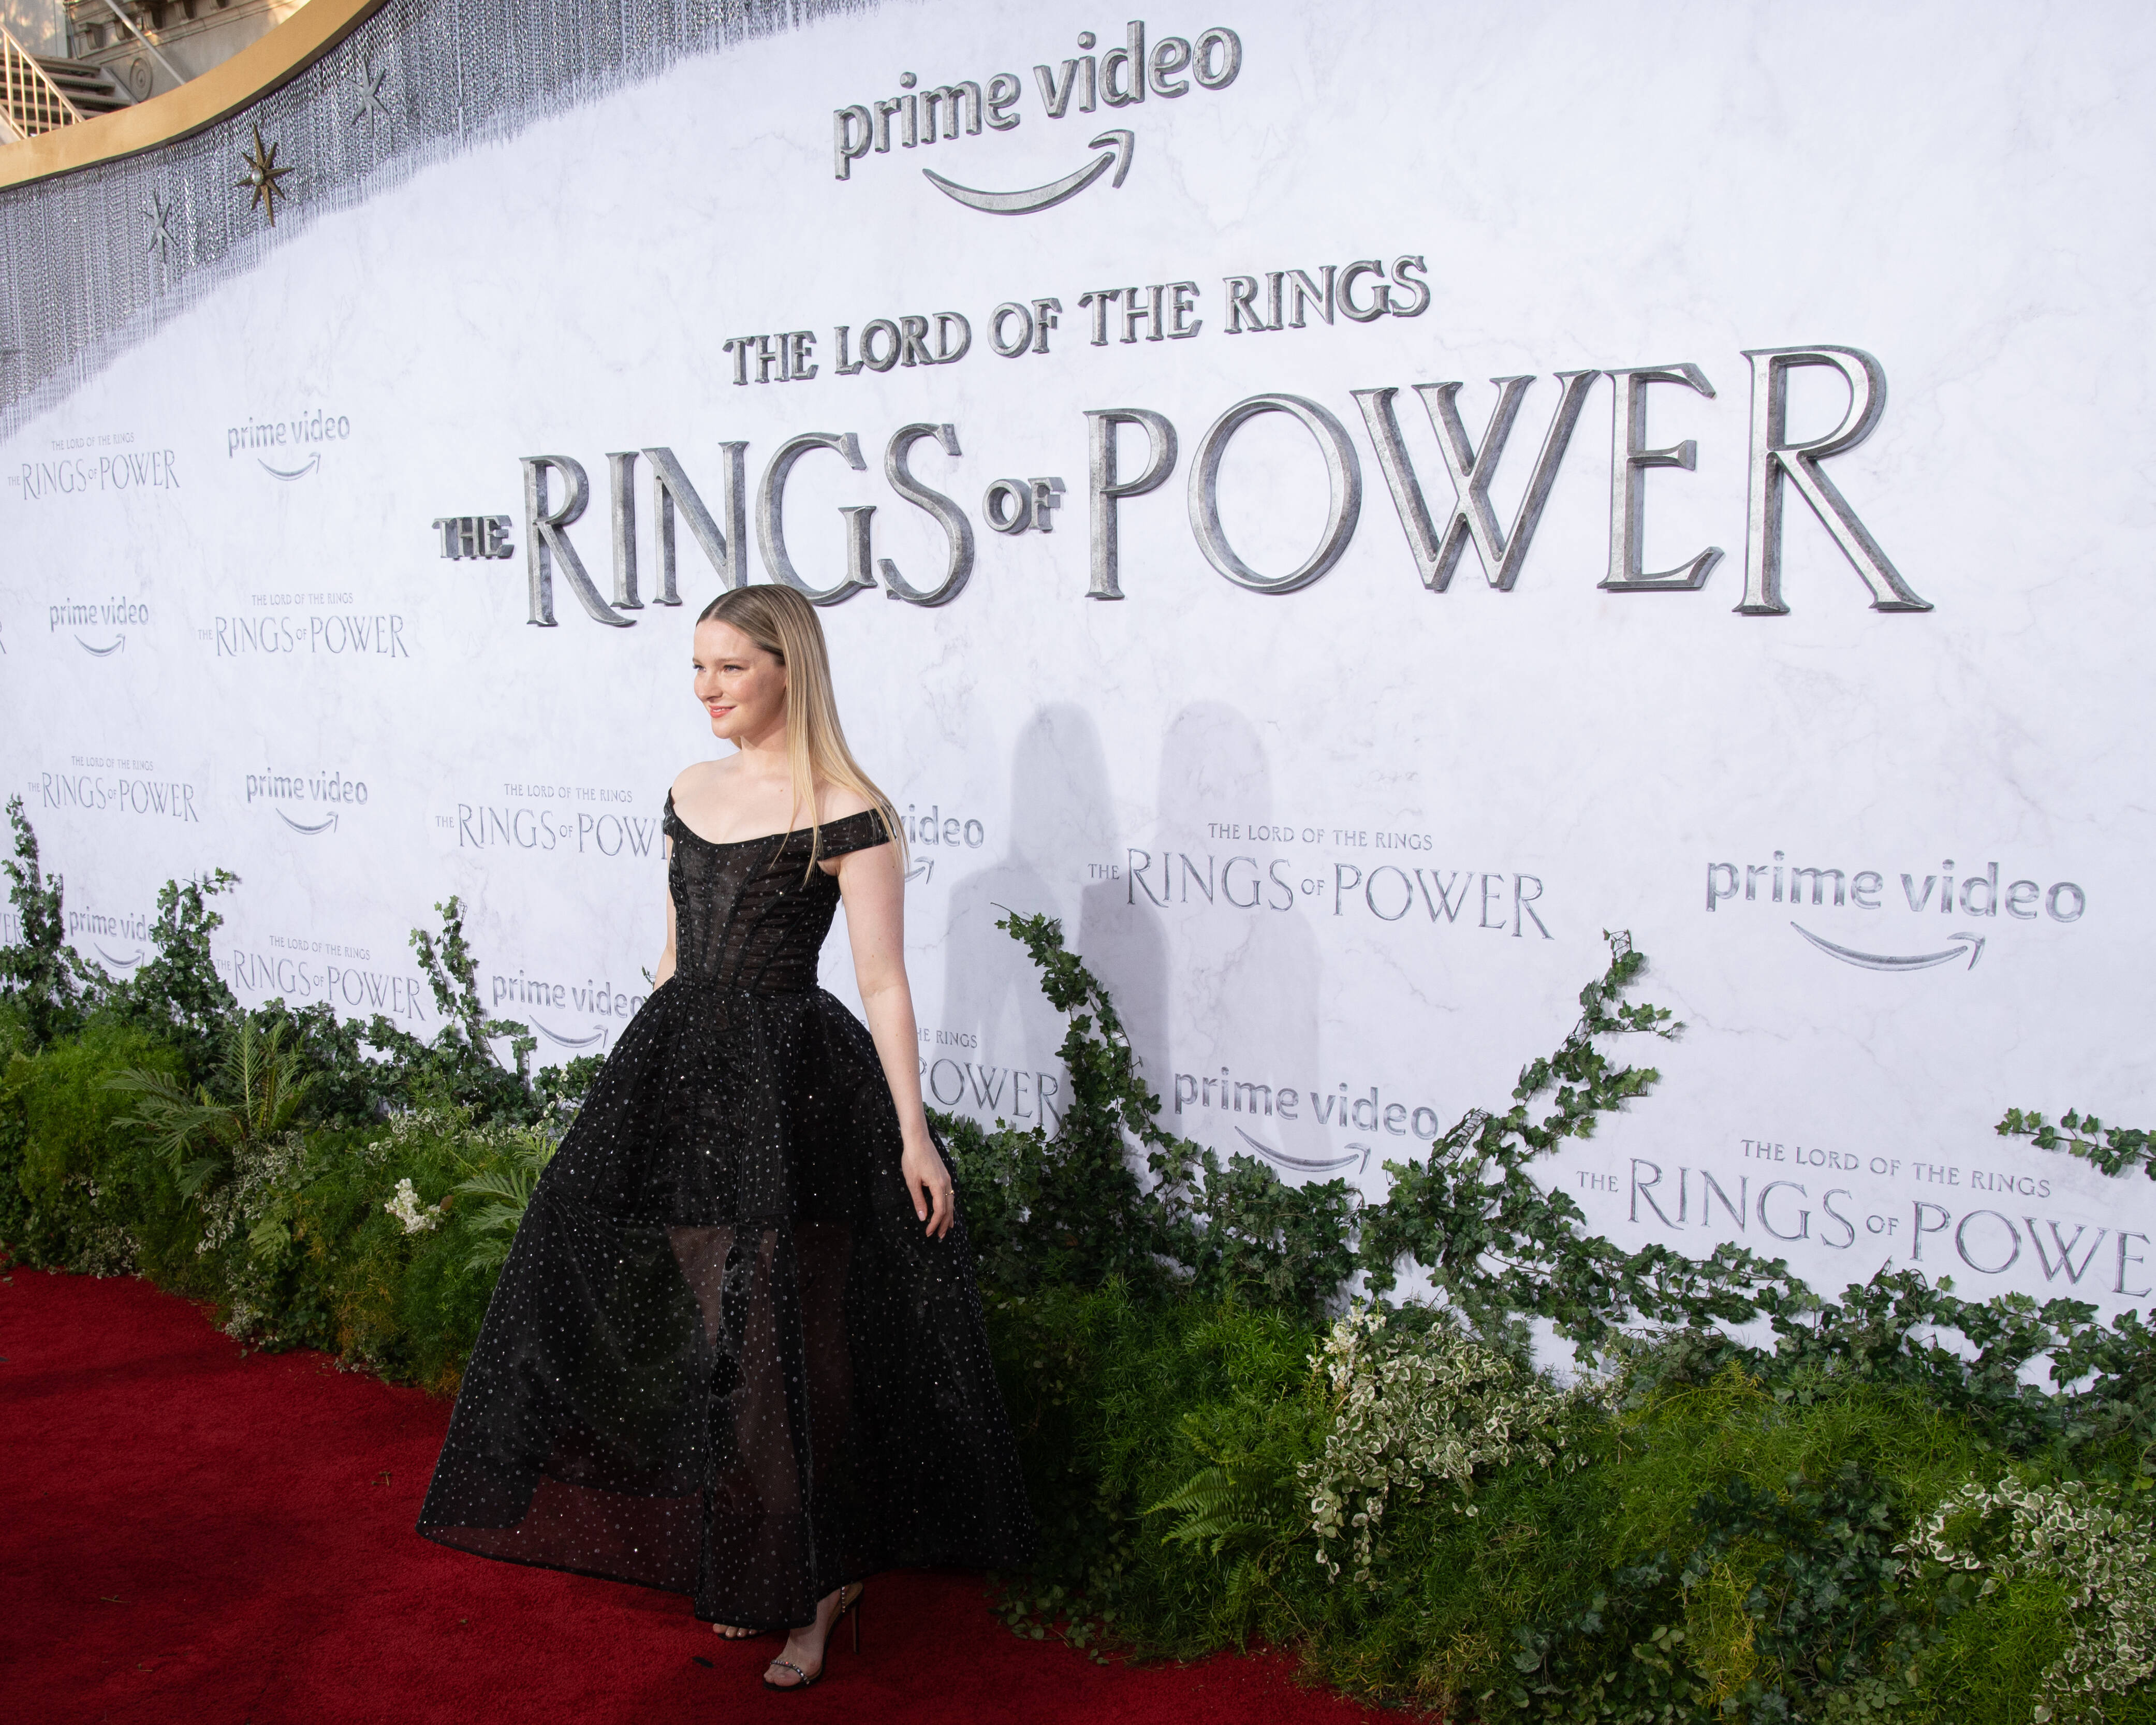 Die Ringe der Macht“: Tolkien-Experte zur neuen Serie zu „Der Herr